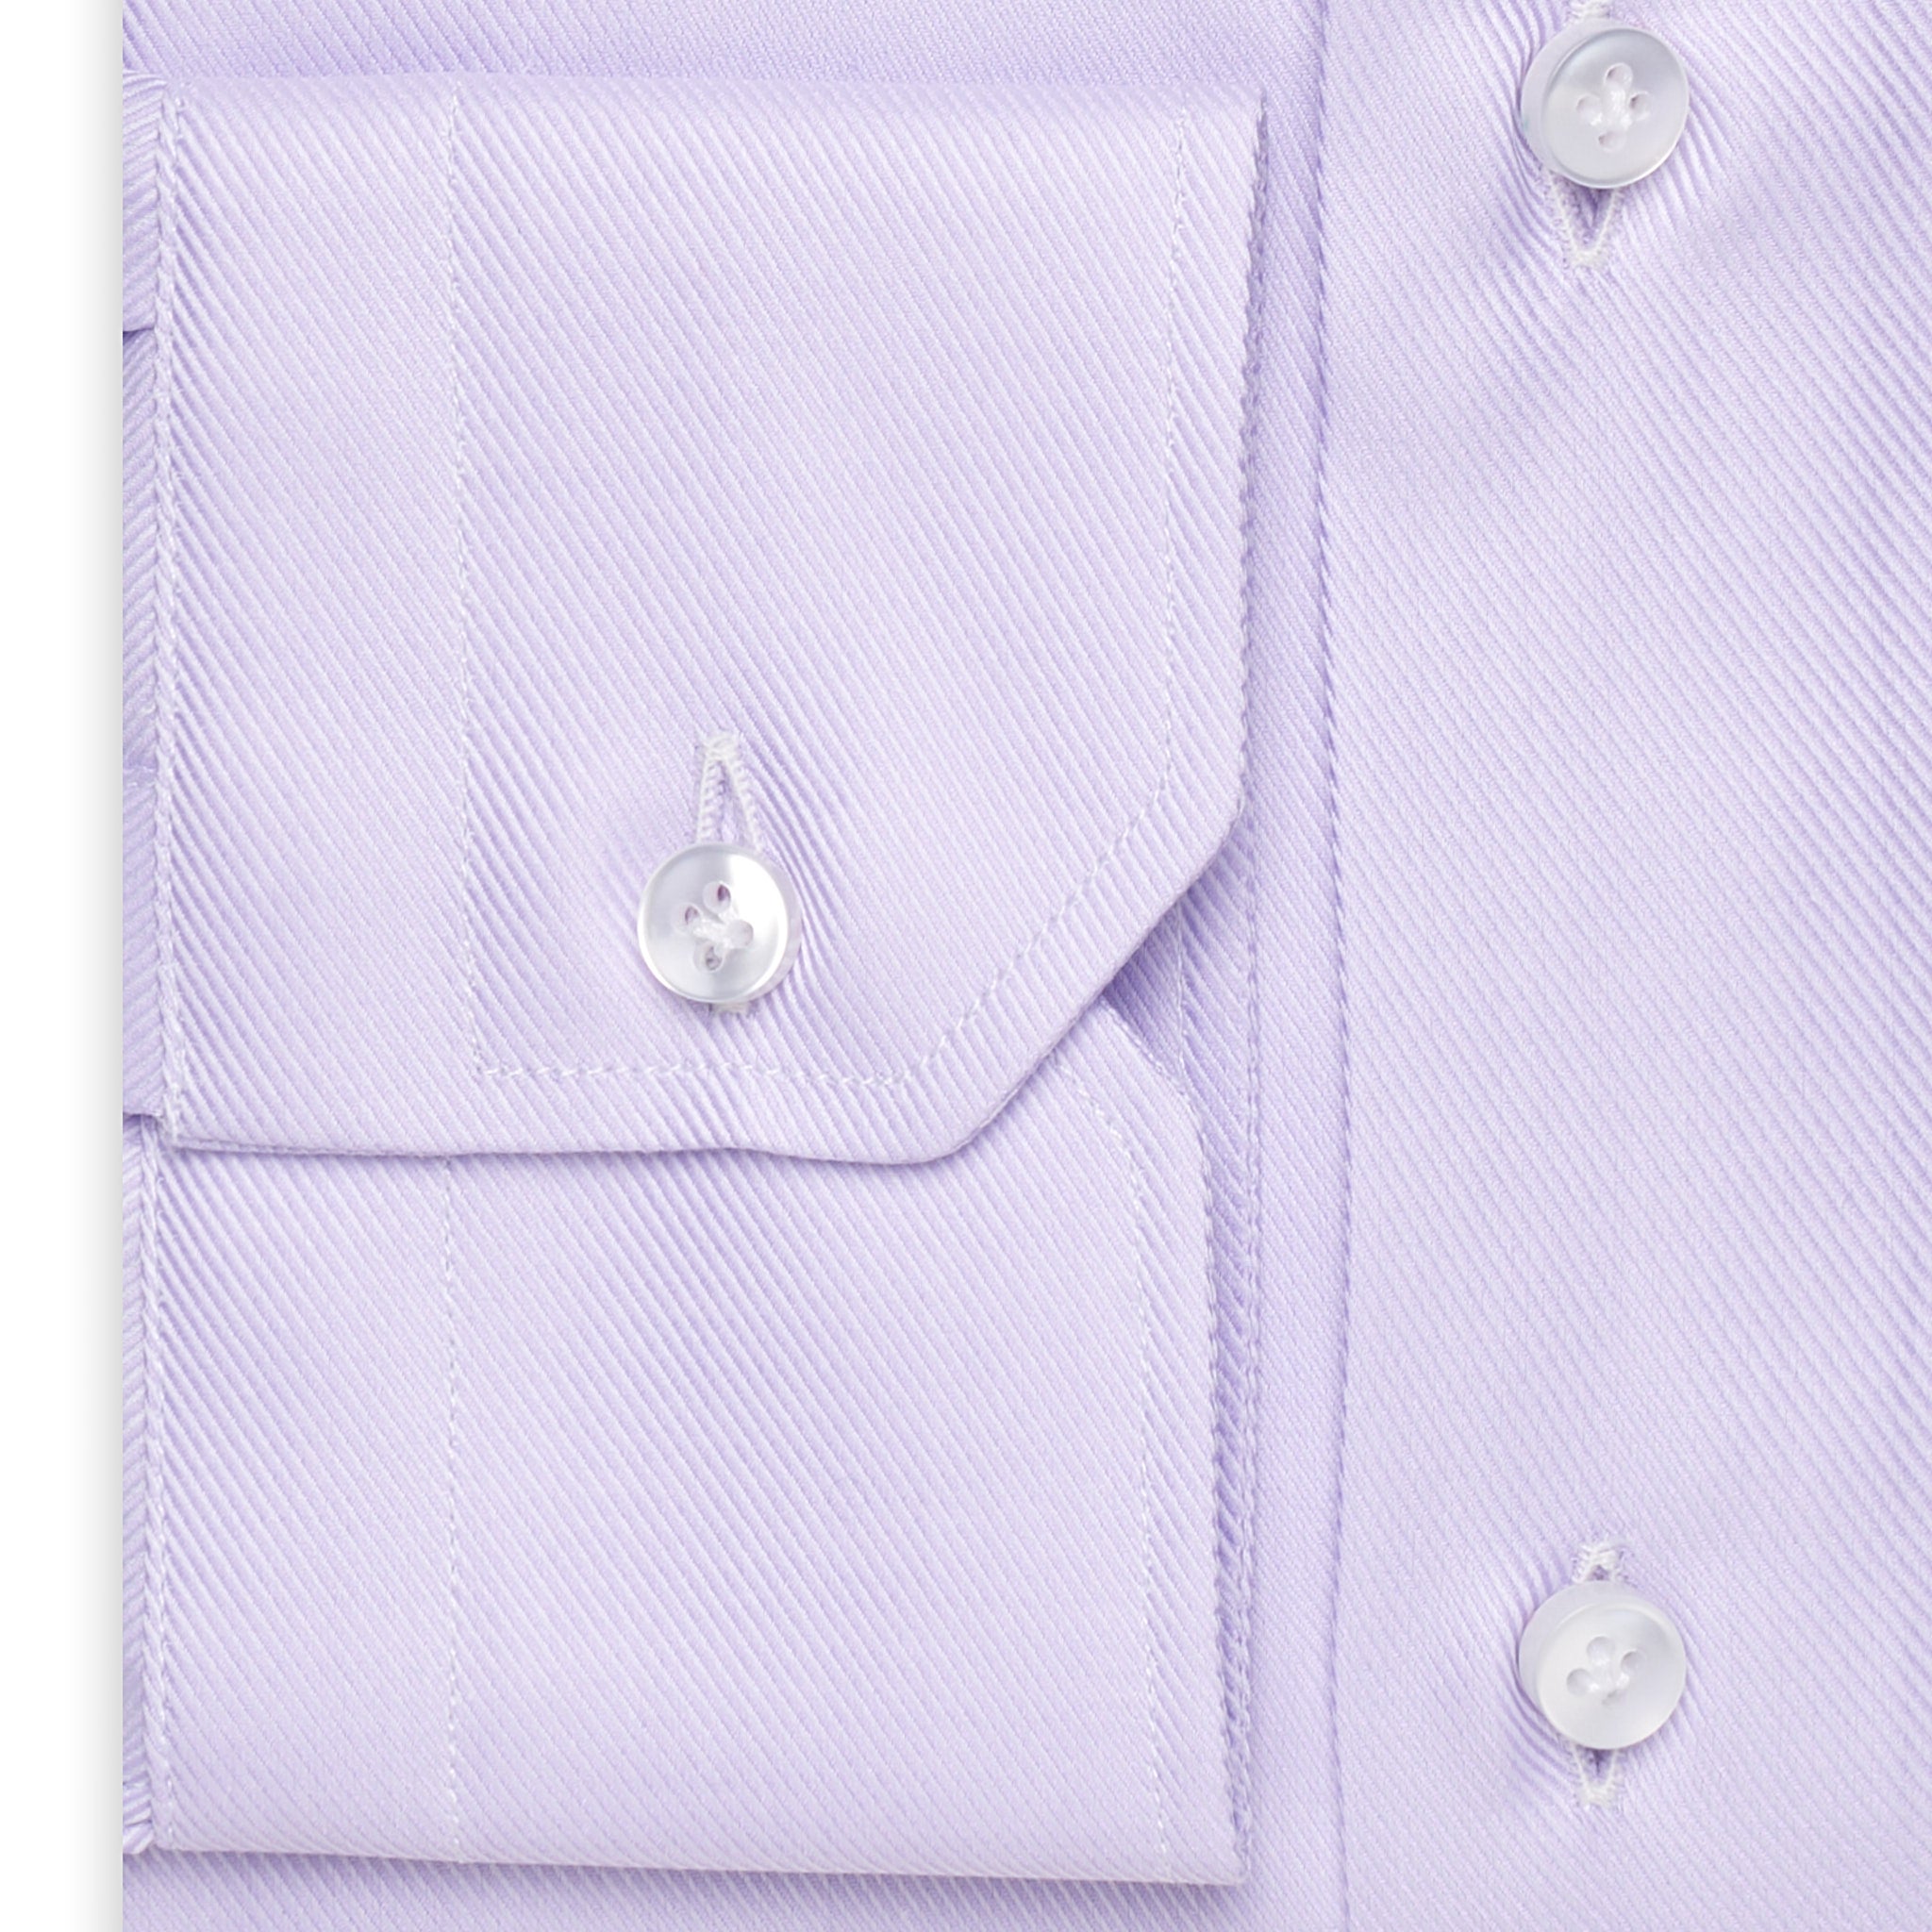 SARTORIO Napoli by KITON Light Purple Cotton Dress Shirt EU 42 NEW US 16.5 Slim Fit SARTORIO